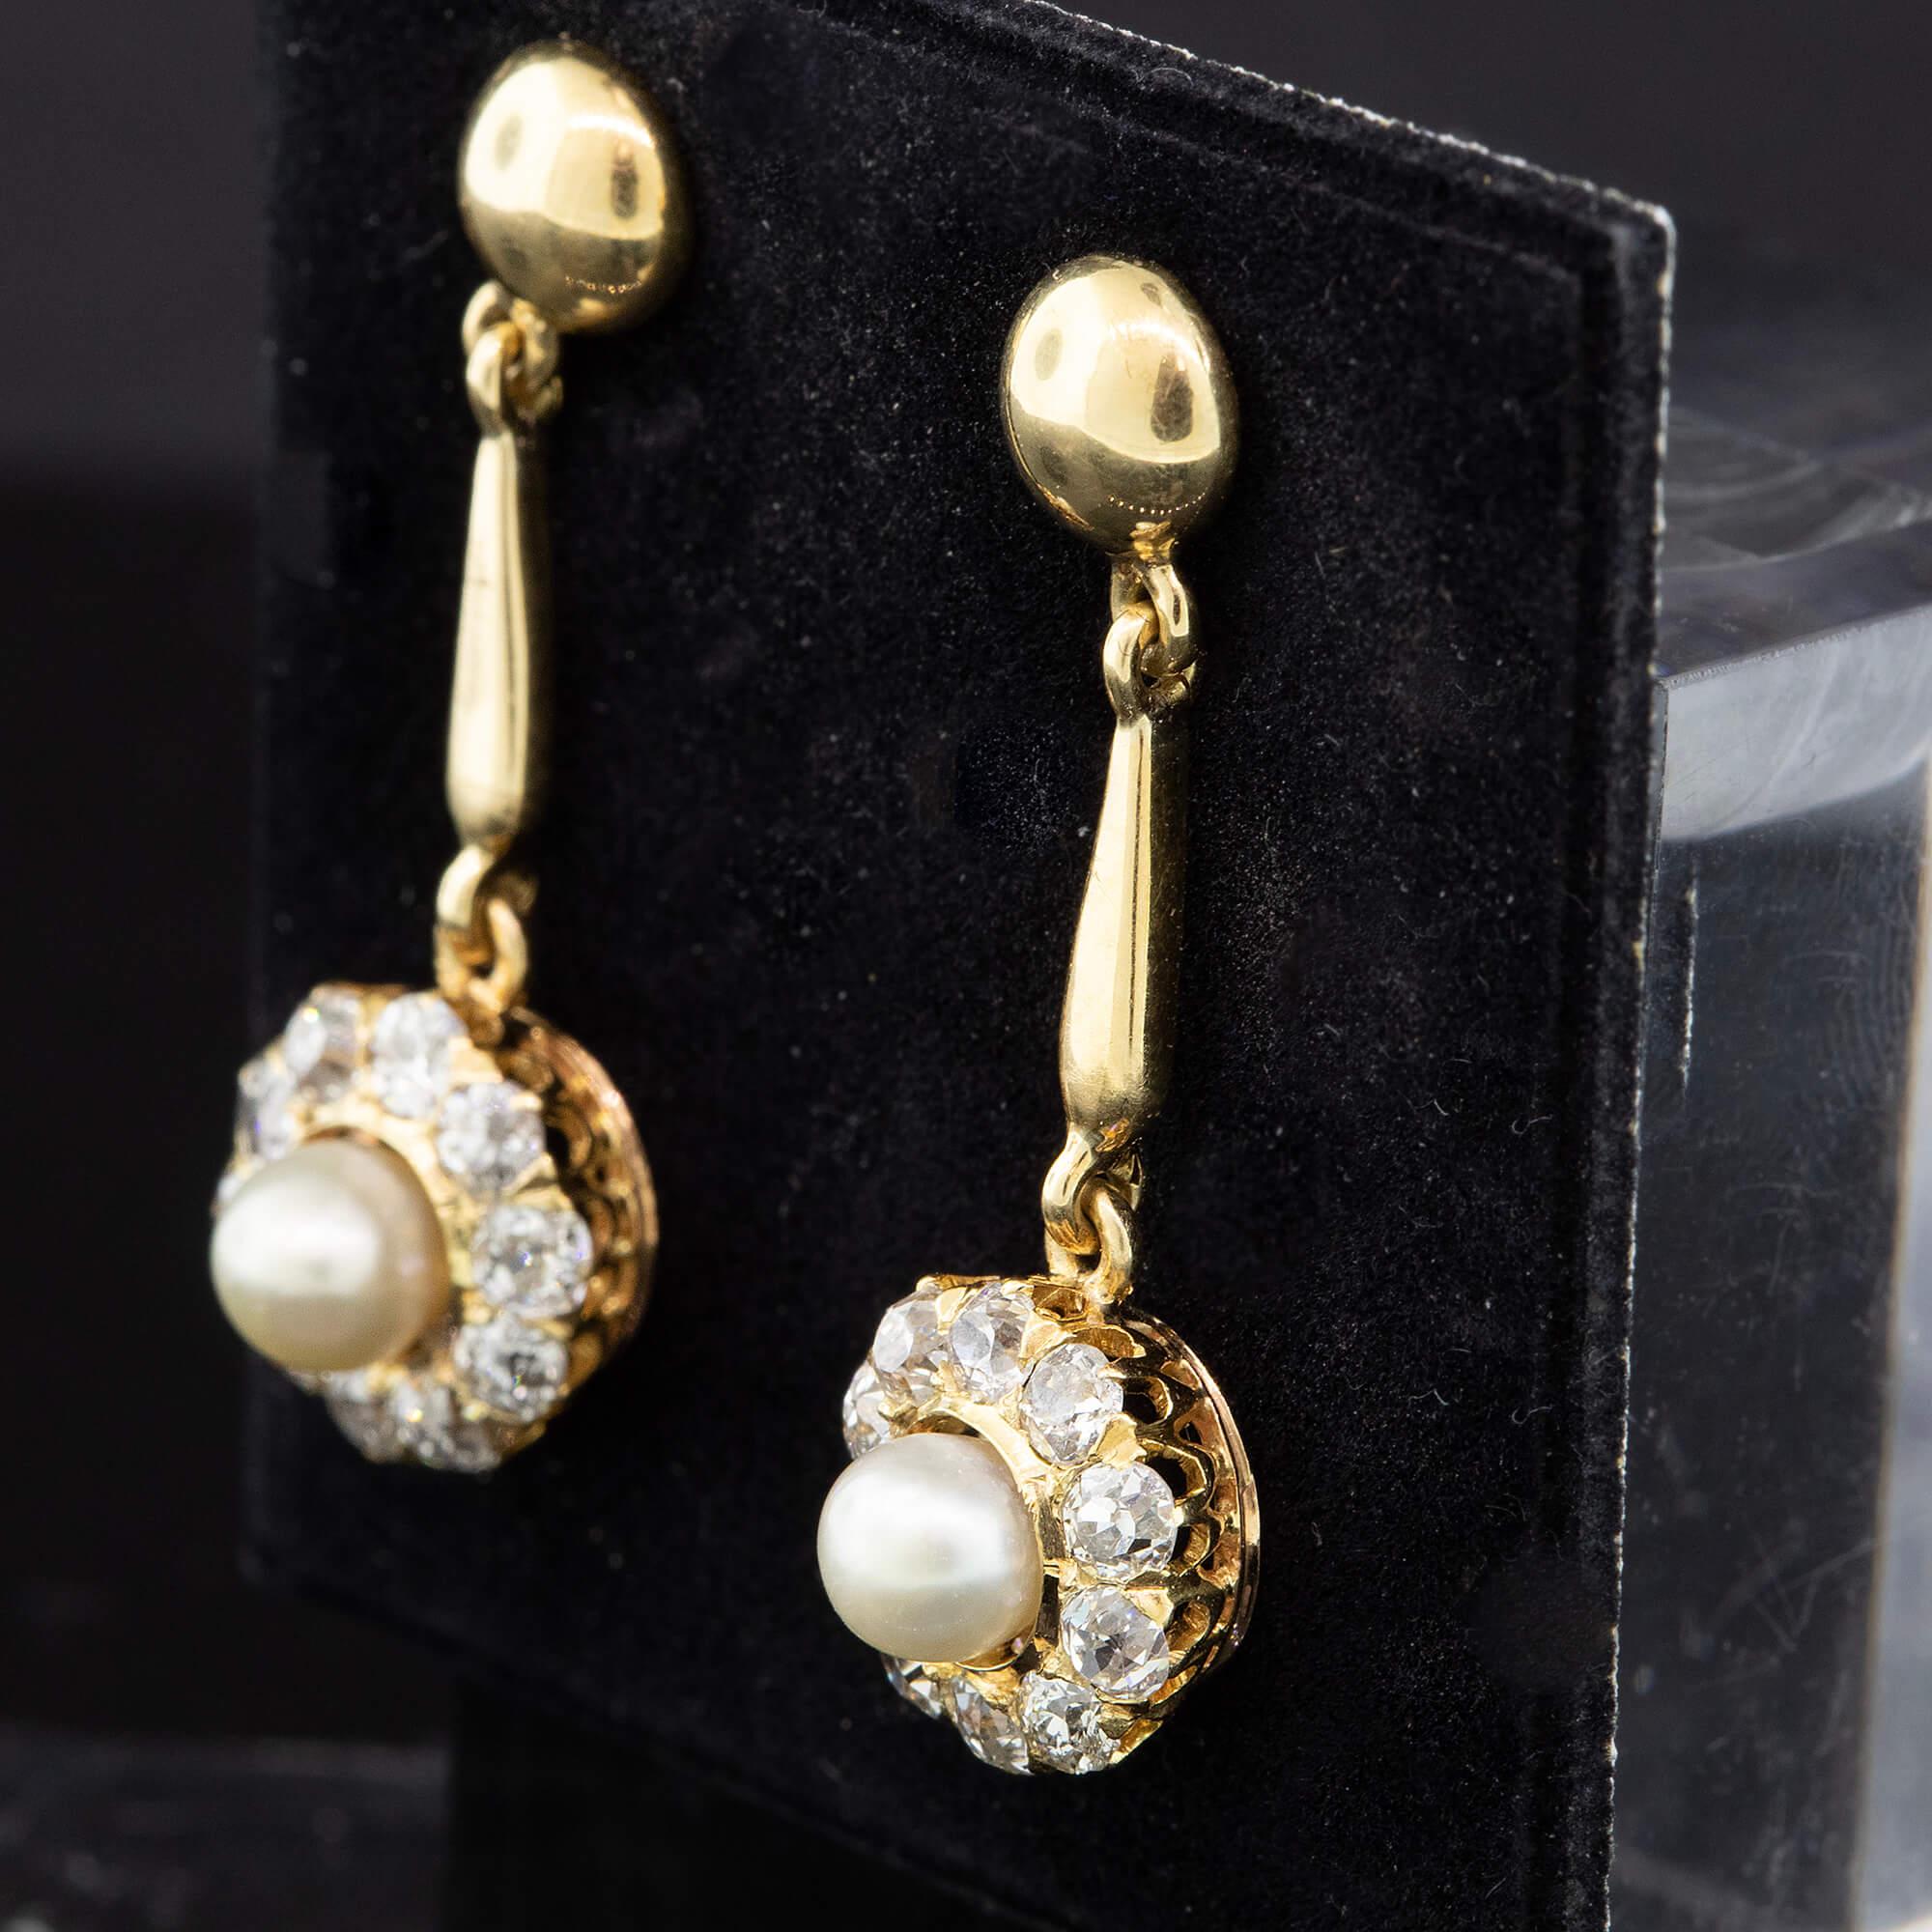 Edwardian Diamond and Pearl Earrings Circa 1900s 1